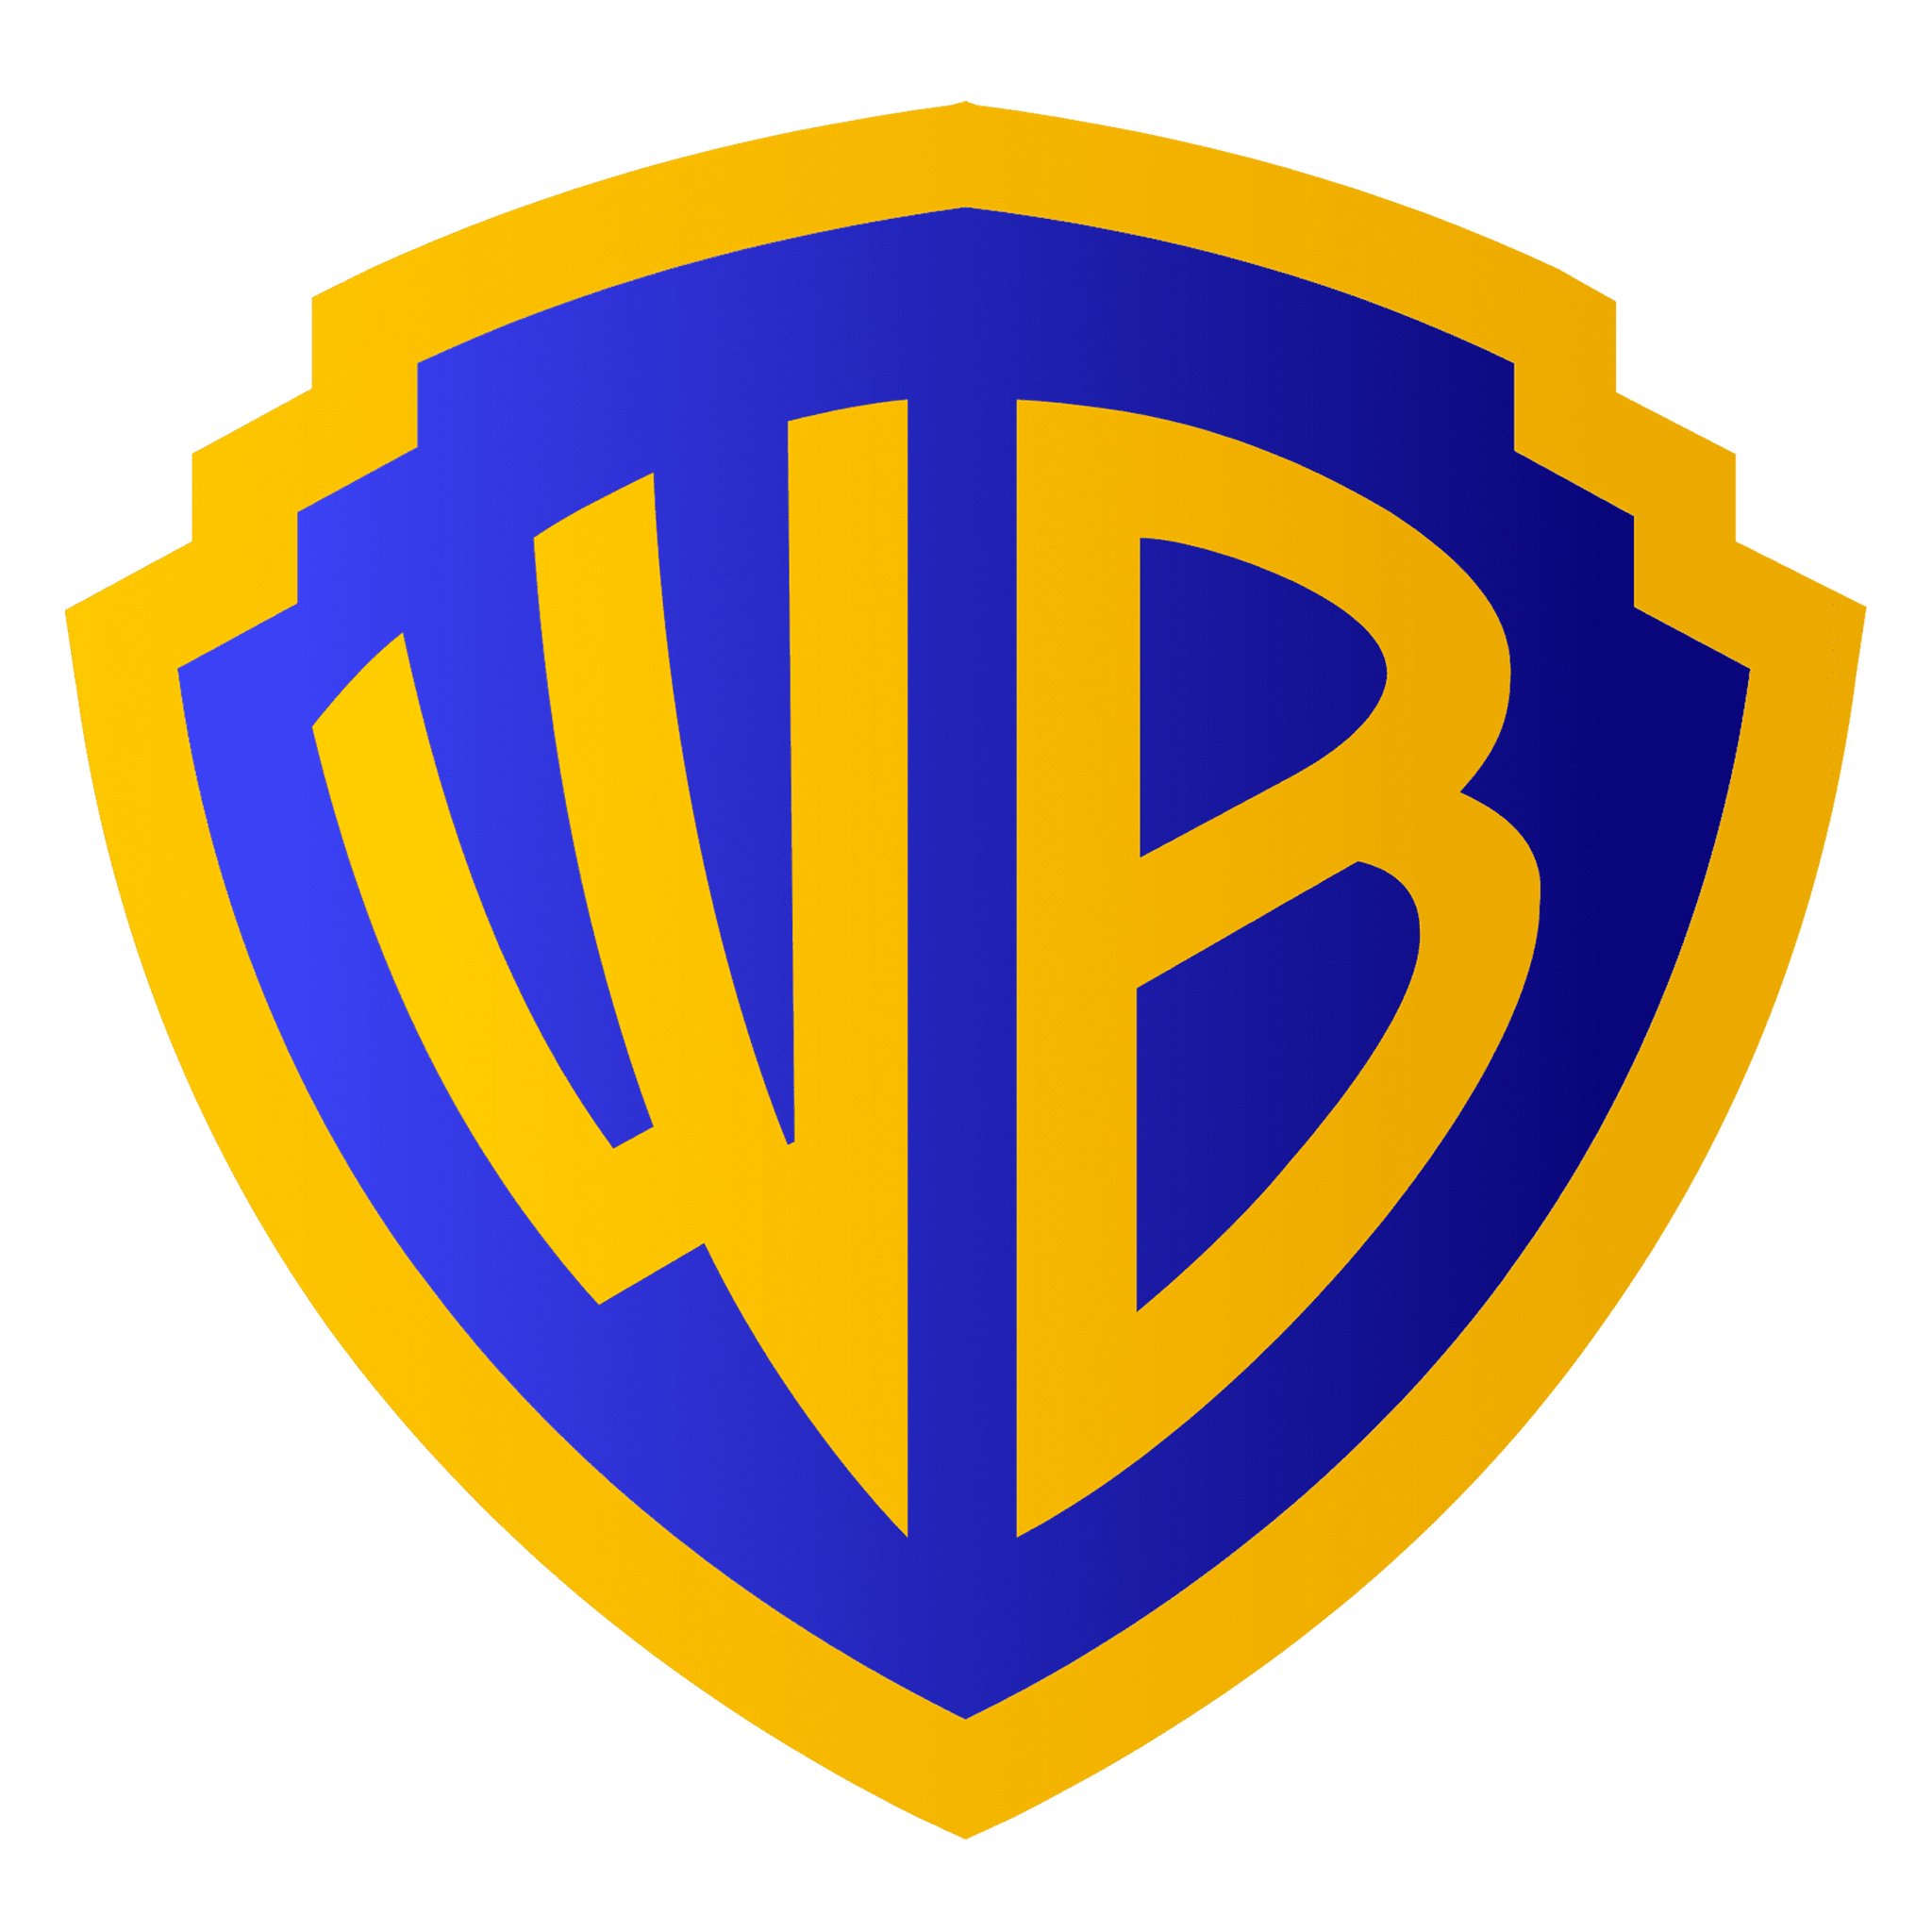 WB_logo.jpg